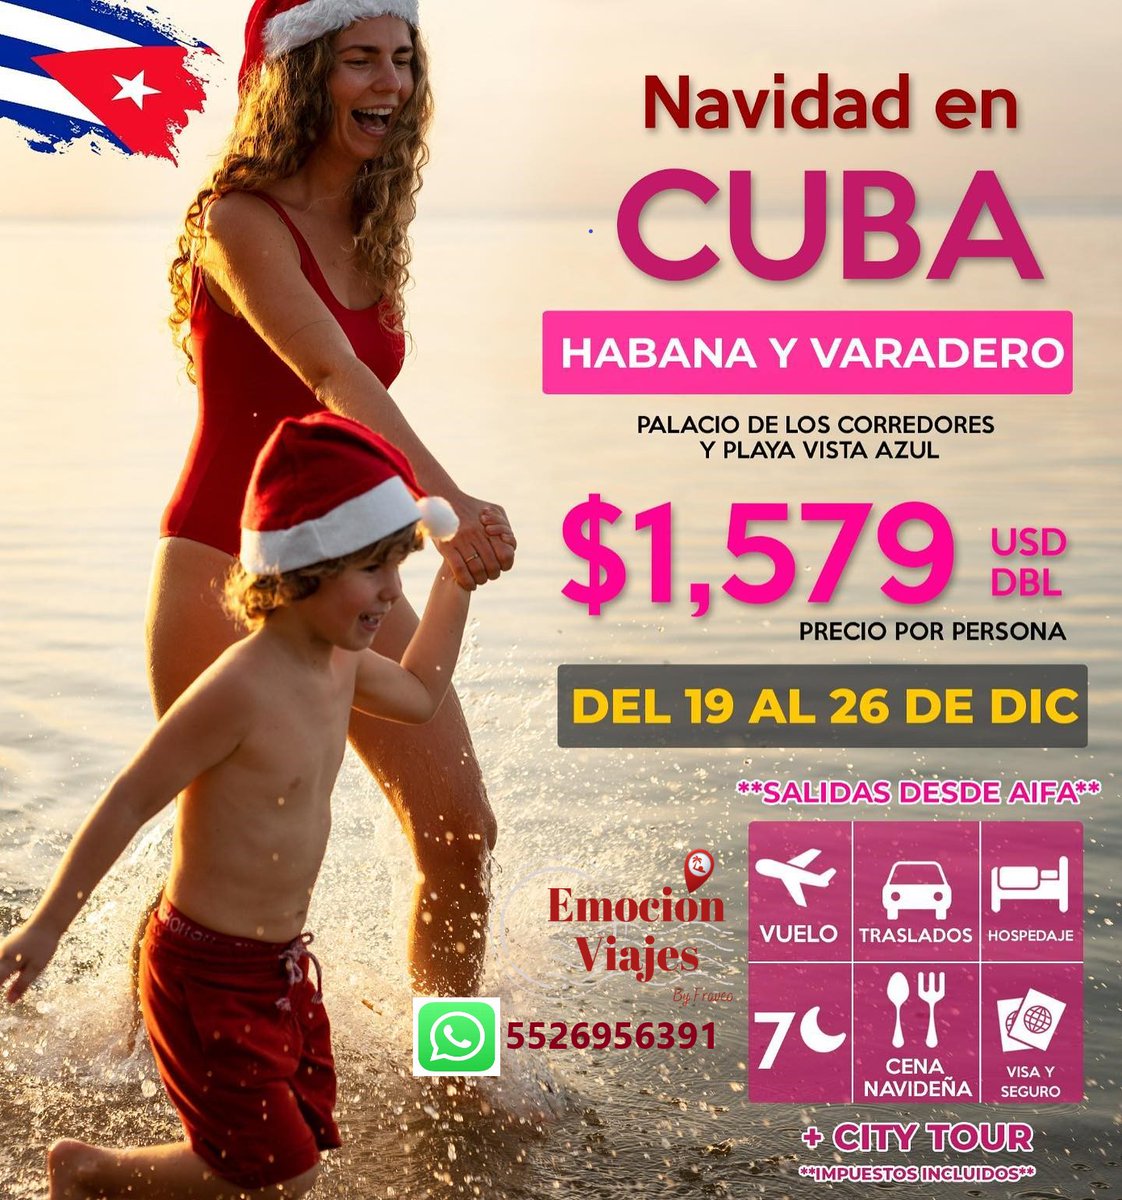 Disfruta las fiestas de navidad en Cuba a un excelente precio !!! 🤩🇵🇷
Si deseas más información envíanos mensaje al 55 2695 6391
#Cuba #varadero #varaderocuba #viajes #paquetesdeviaje #paquetesturisticos  #travel #viajerosmexicanos #ViajerosFrecuentes #viajerosporelmundo